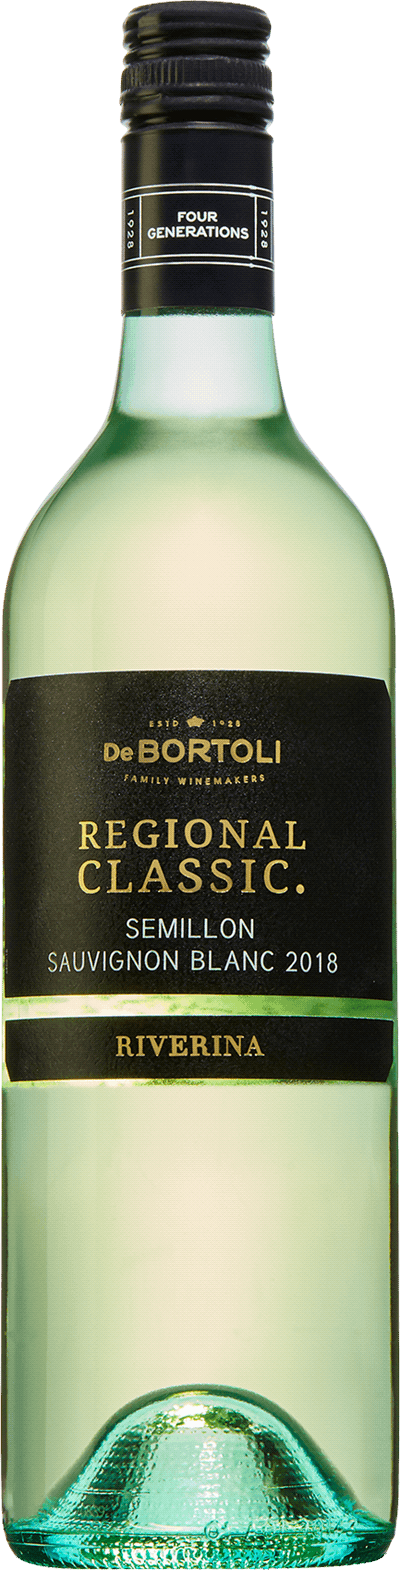 Regional Classic Semillon Sauvignon Blanc